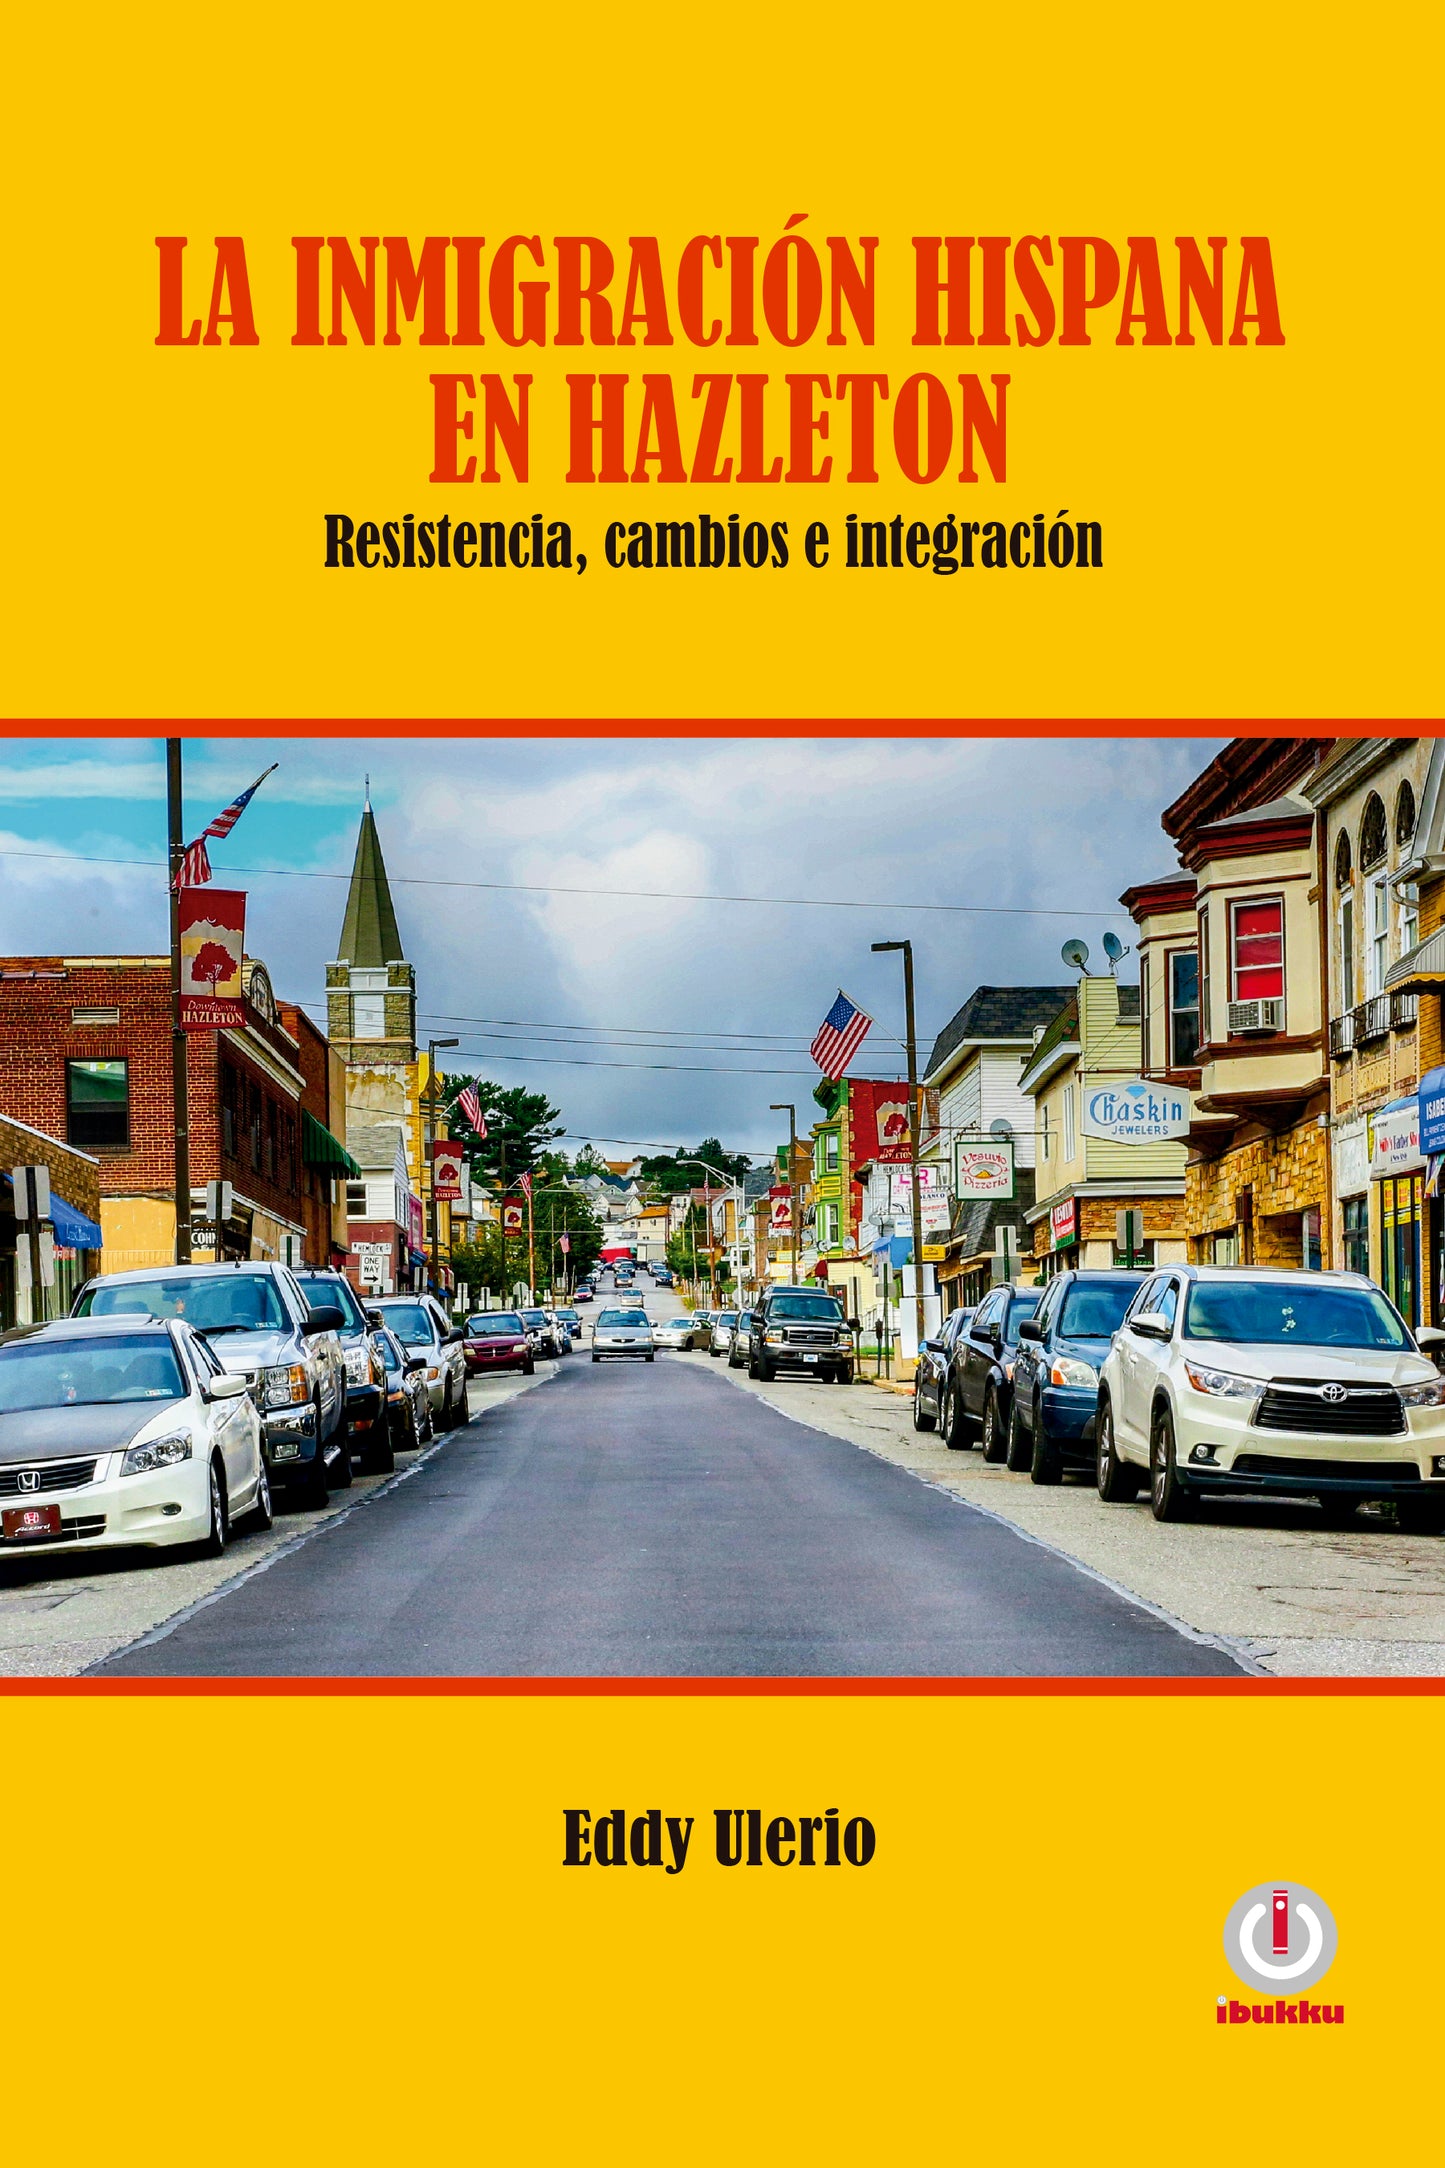 La inmigración hispana en Hazleton: Resistencia, cambios e integración